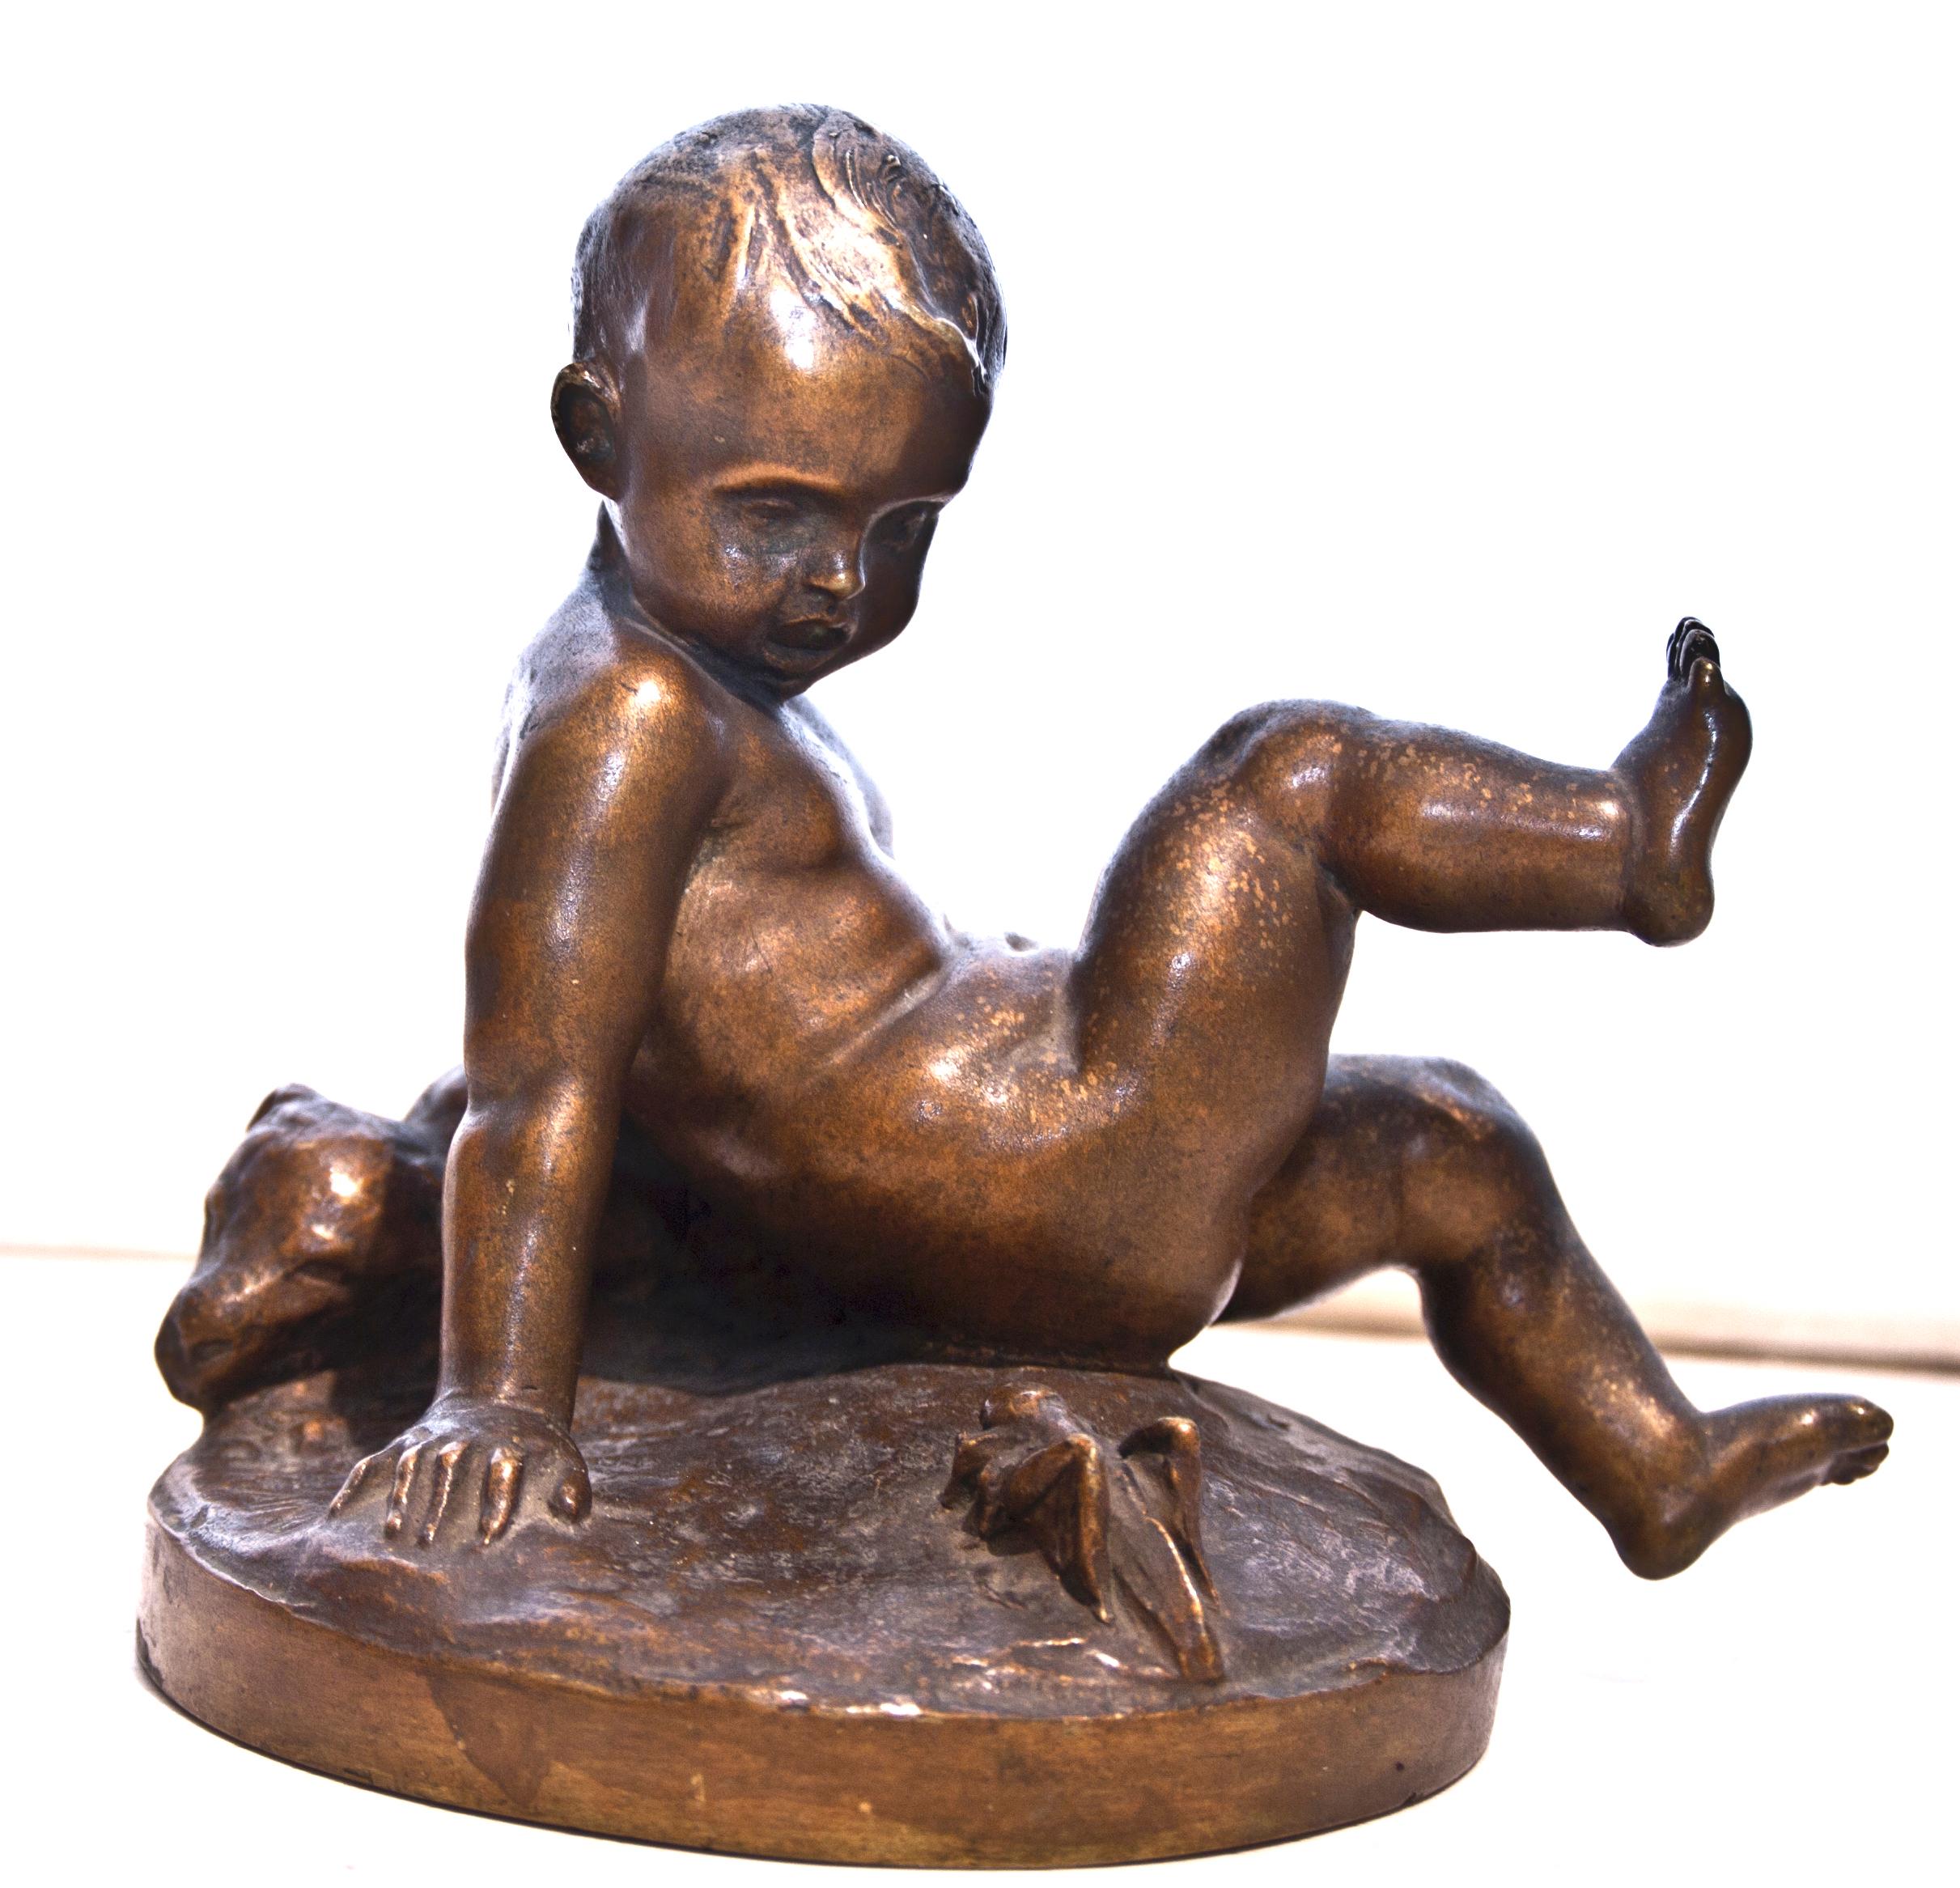 Bronze avec base en marbre du sculpteur italien Pietro Piraino (1878-1950).
Très bonnes conditions.

Cette œuvre d'art est expédiée d'Italie. En vertu de la législation existante, toute œuvre d'art en Italie créée il y a plus de 70 ans par un